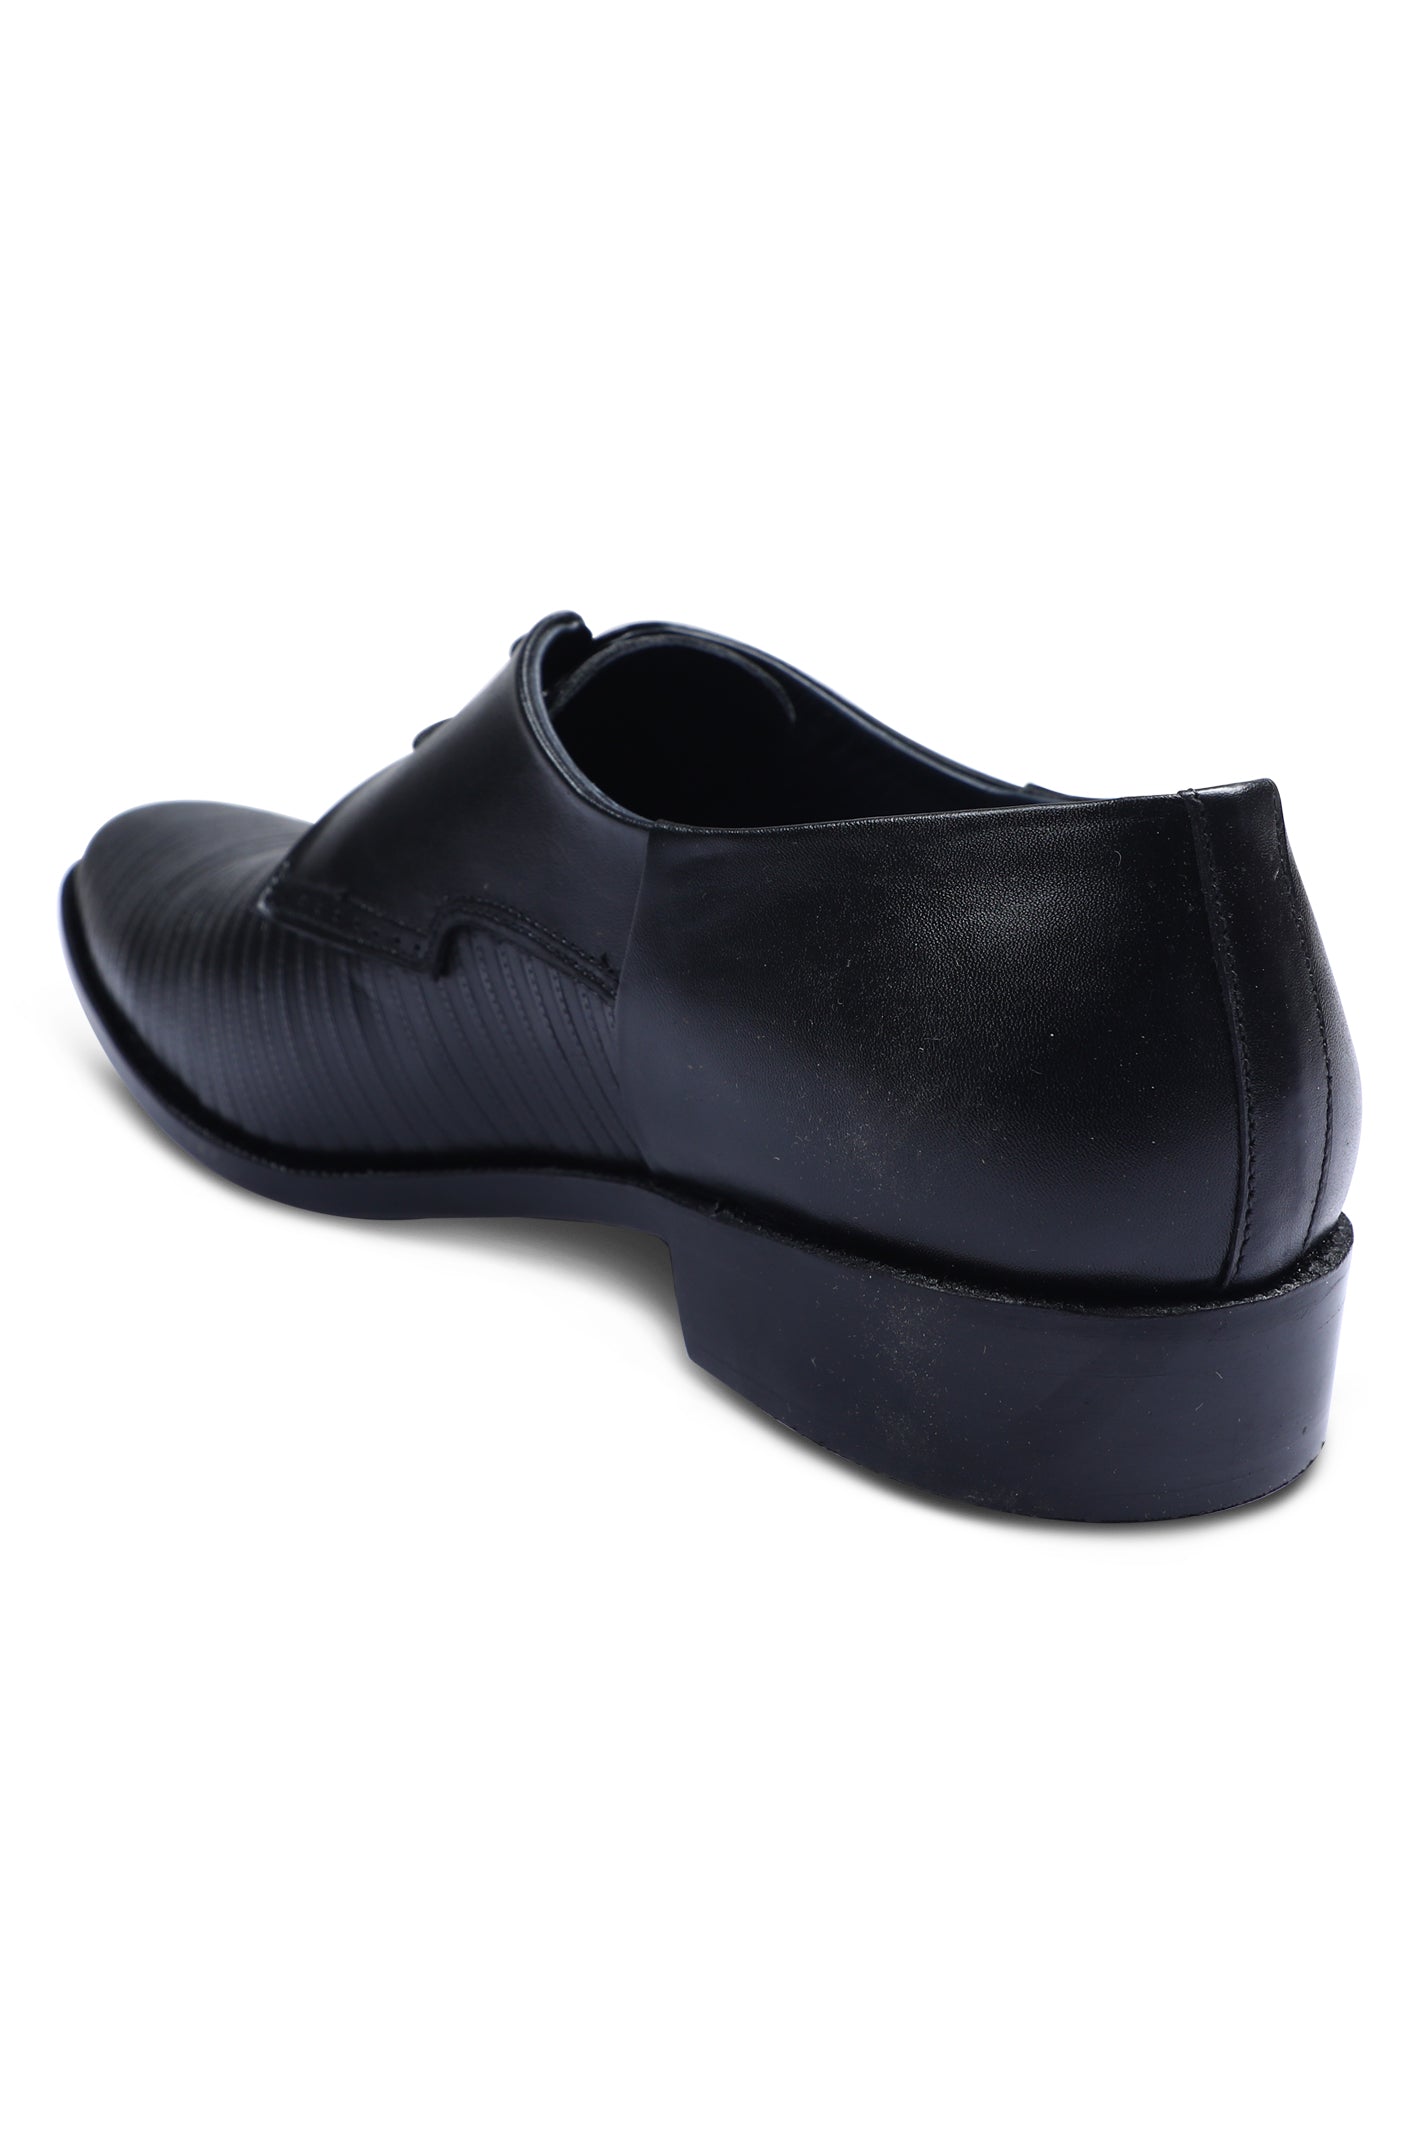 Formal Shoes For Men in Black SKU: SMF-0170-BLACK - Diners